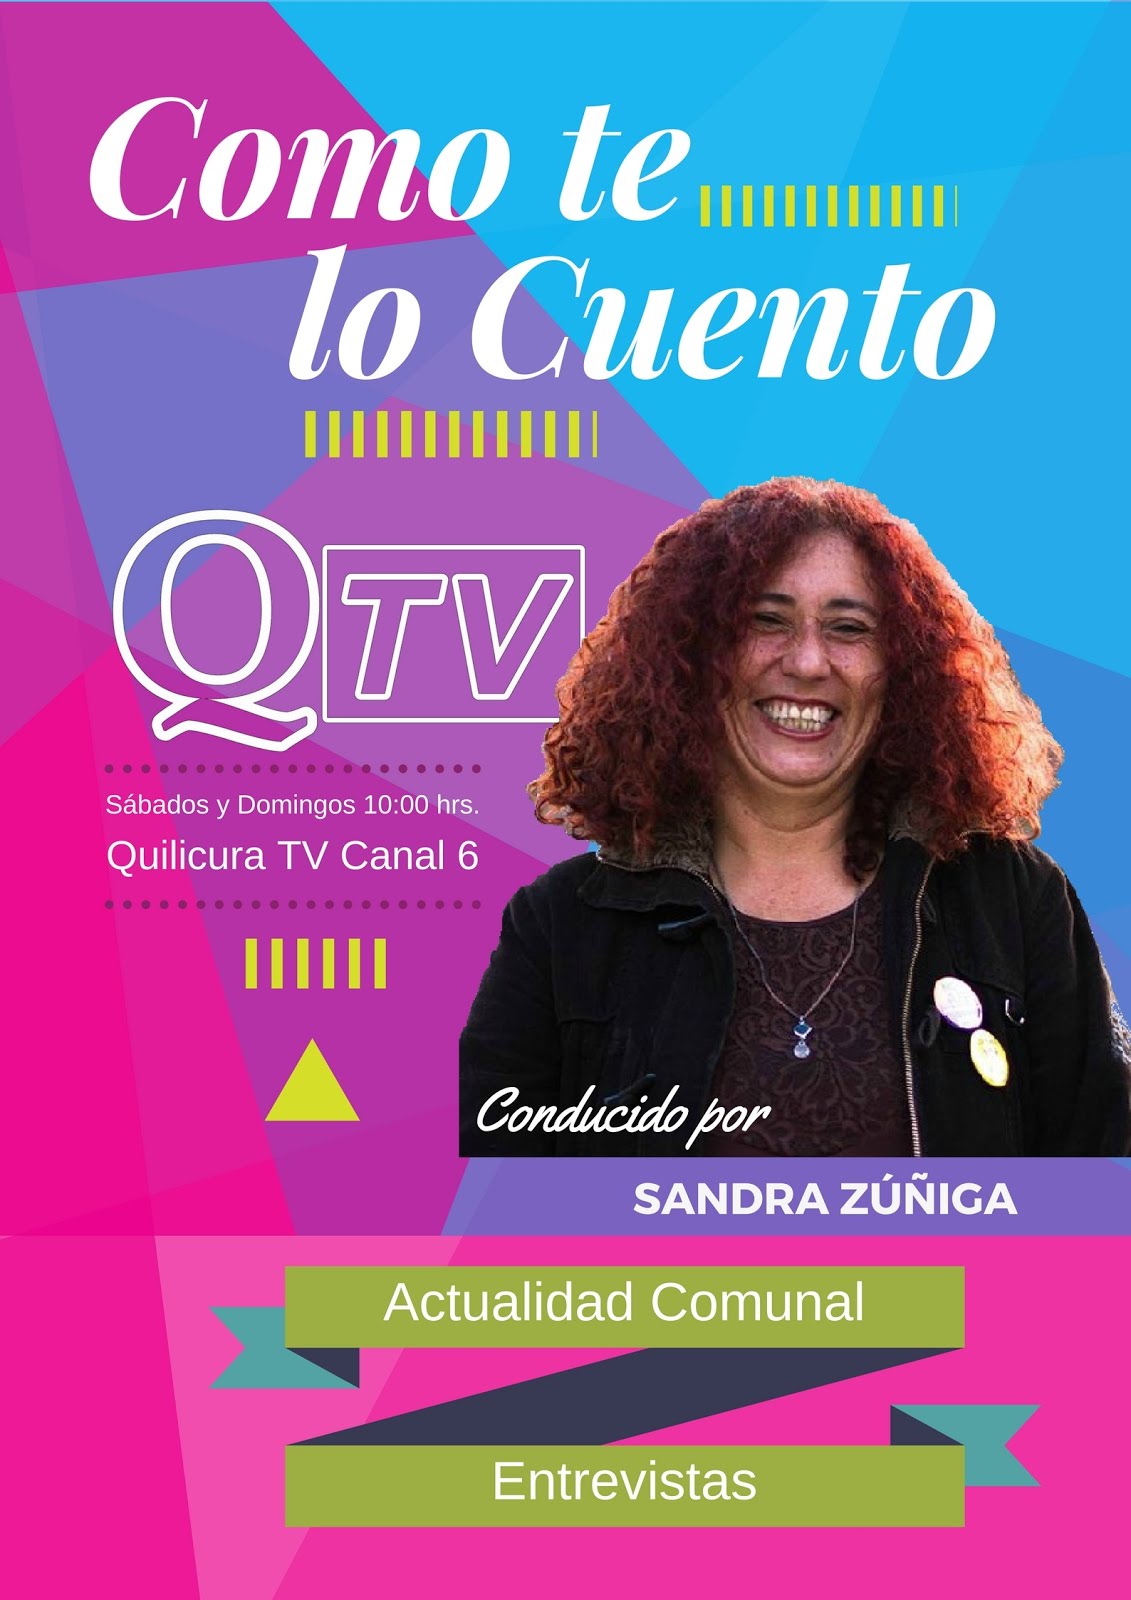 "COMO TE LO CUENTO" Programa de Actualidad y Entrevistas. Conducido por Sandra Zúñiga